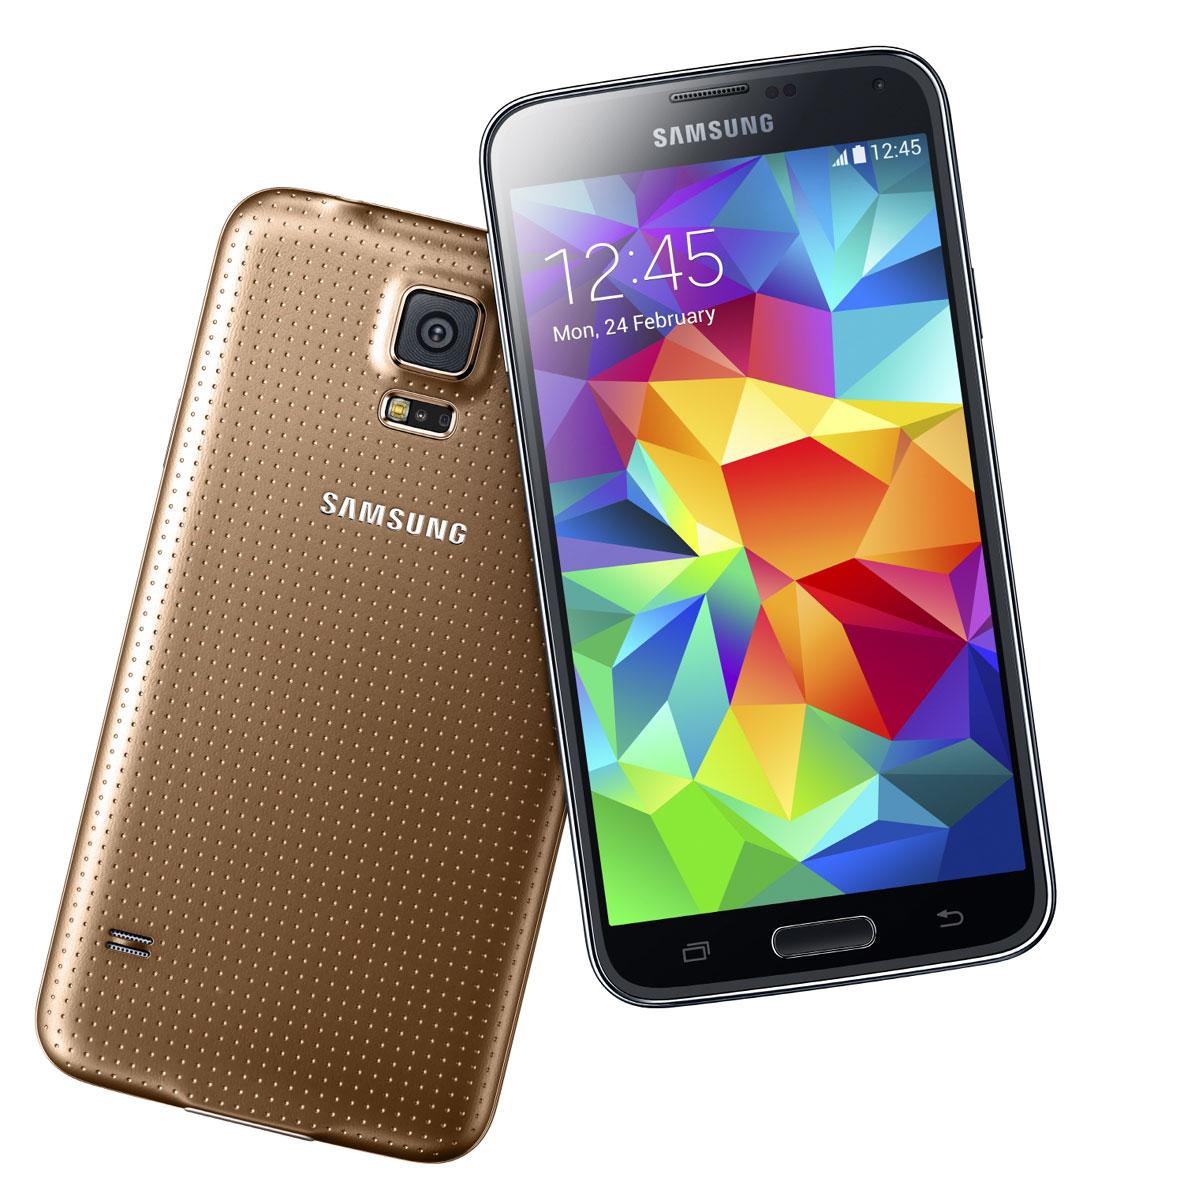 Samsung Galaxy S5 en color dorado u oro